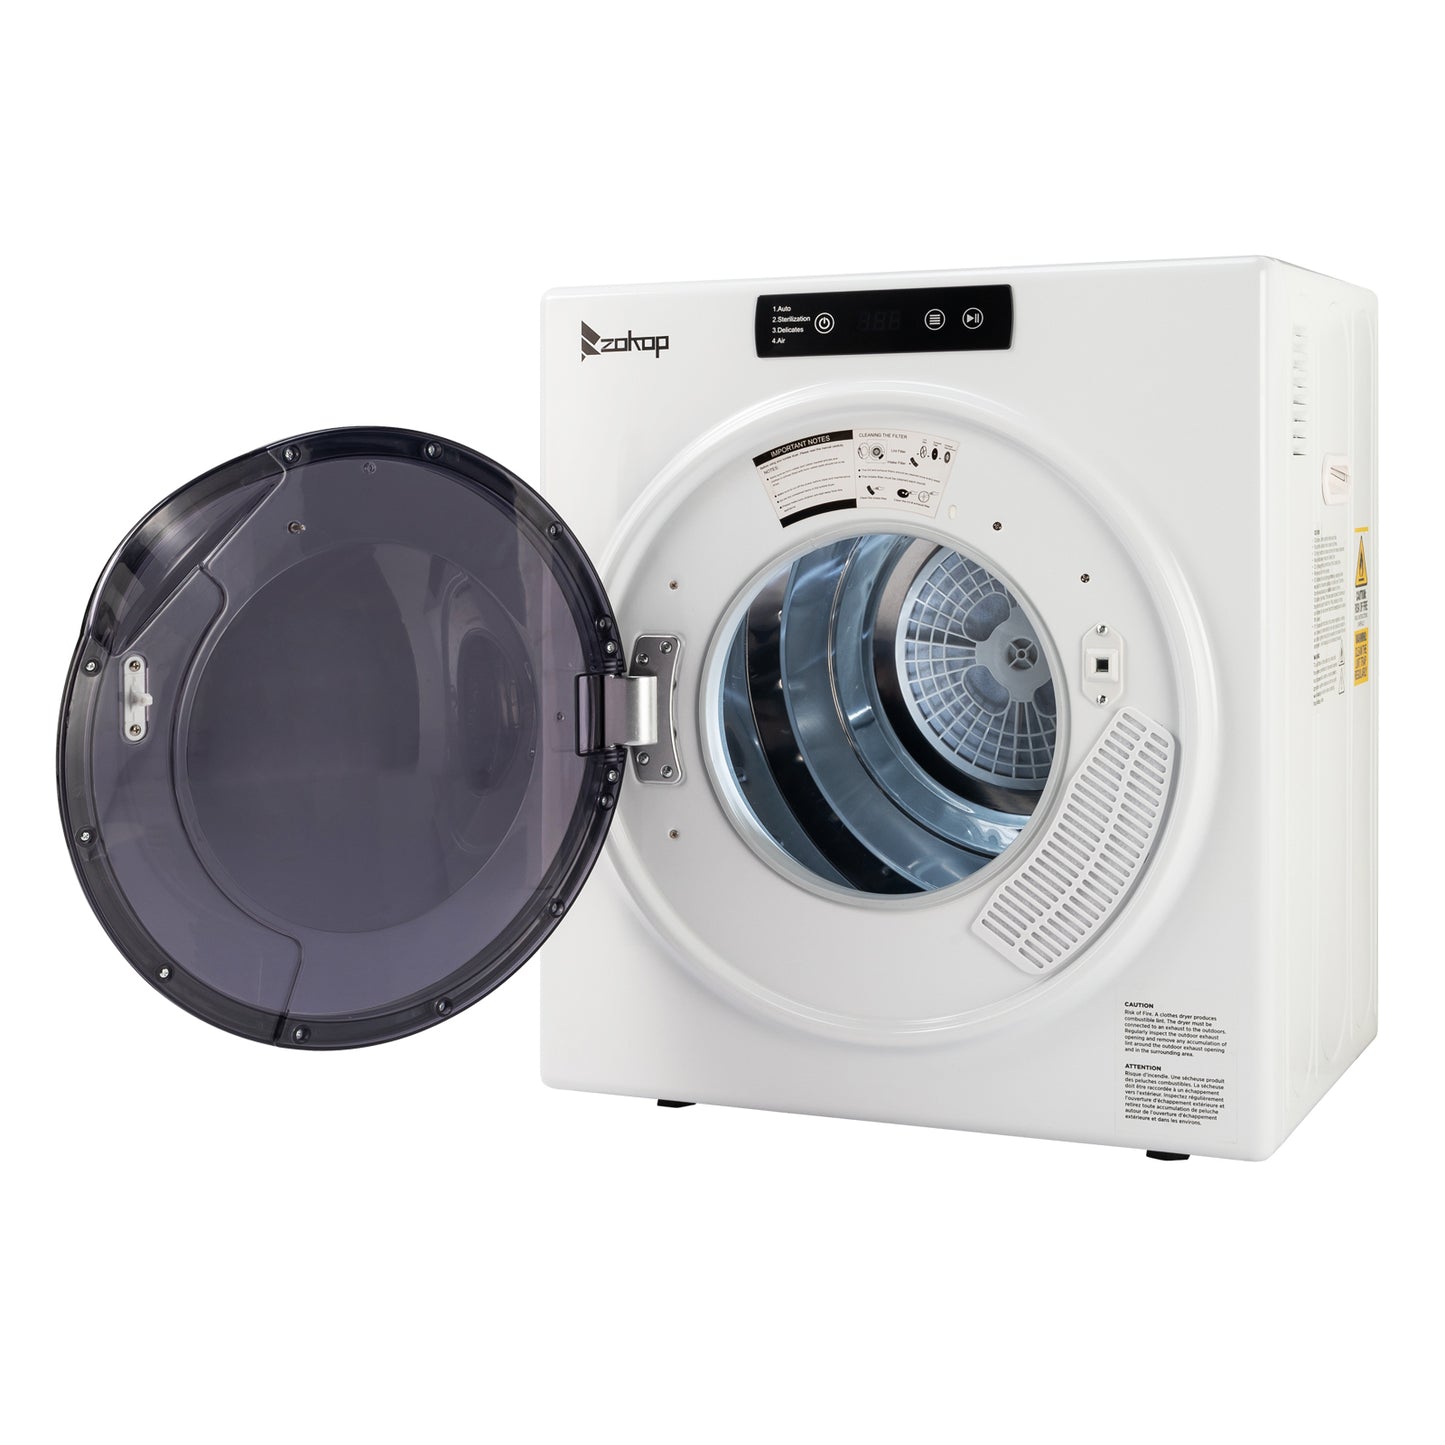 ZOKOP GYJ50-D5 LCD Screen Ultraviolet Sterilization Household Dryer